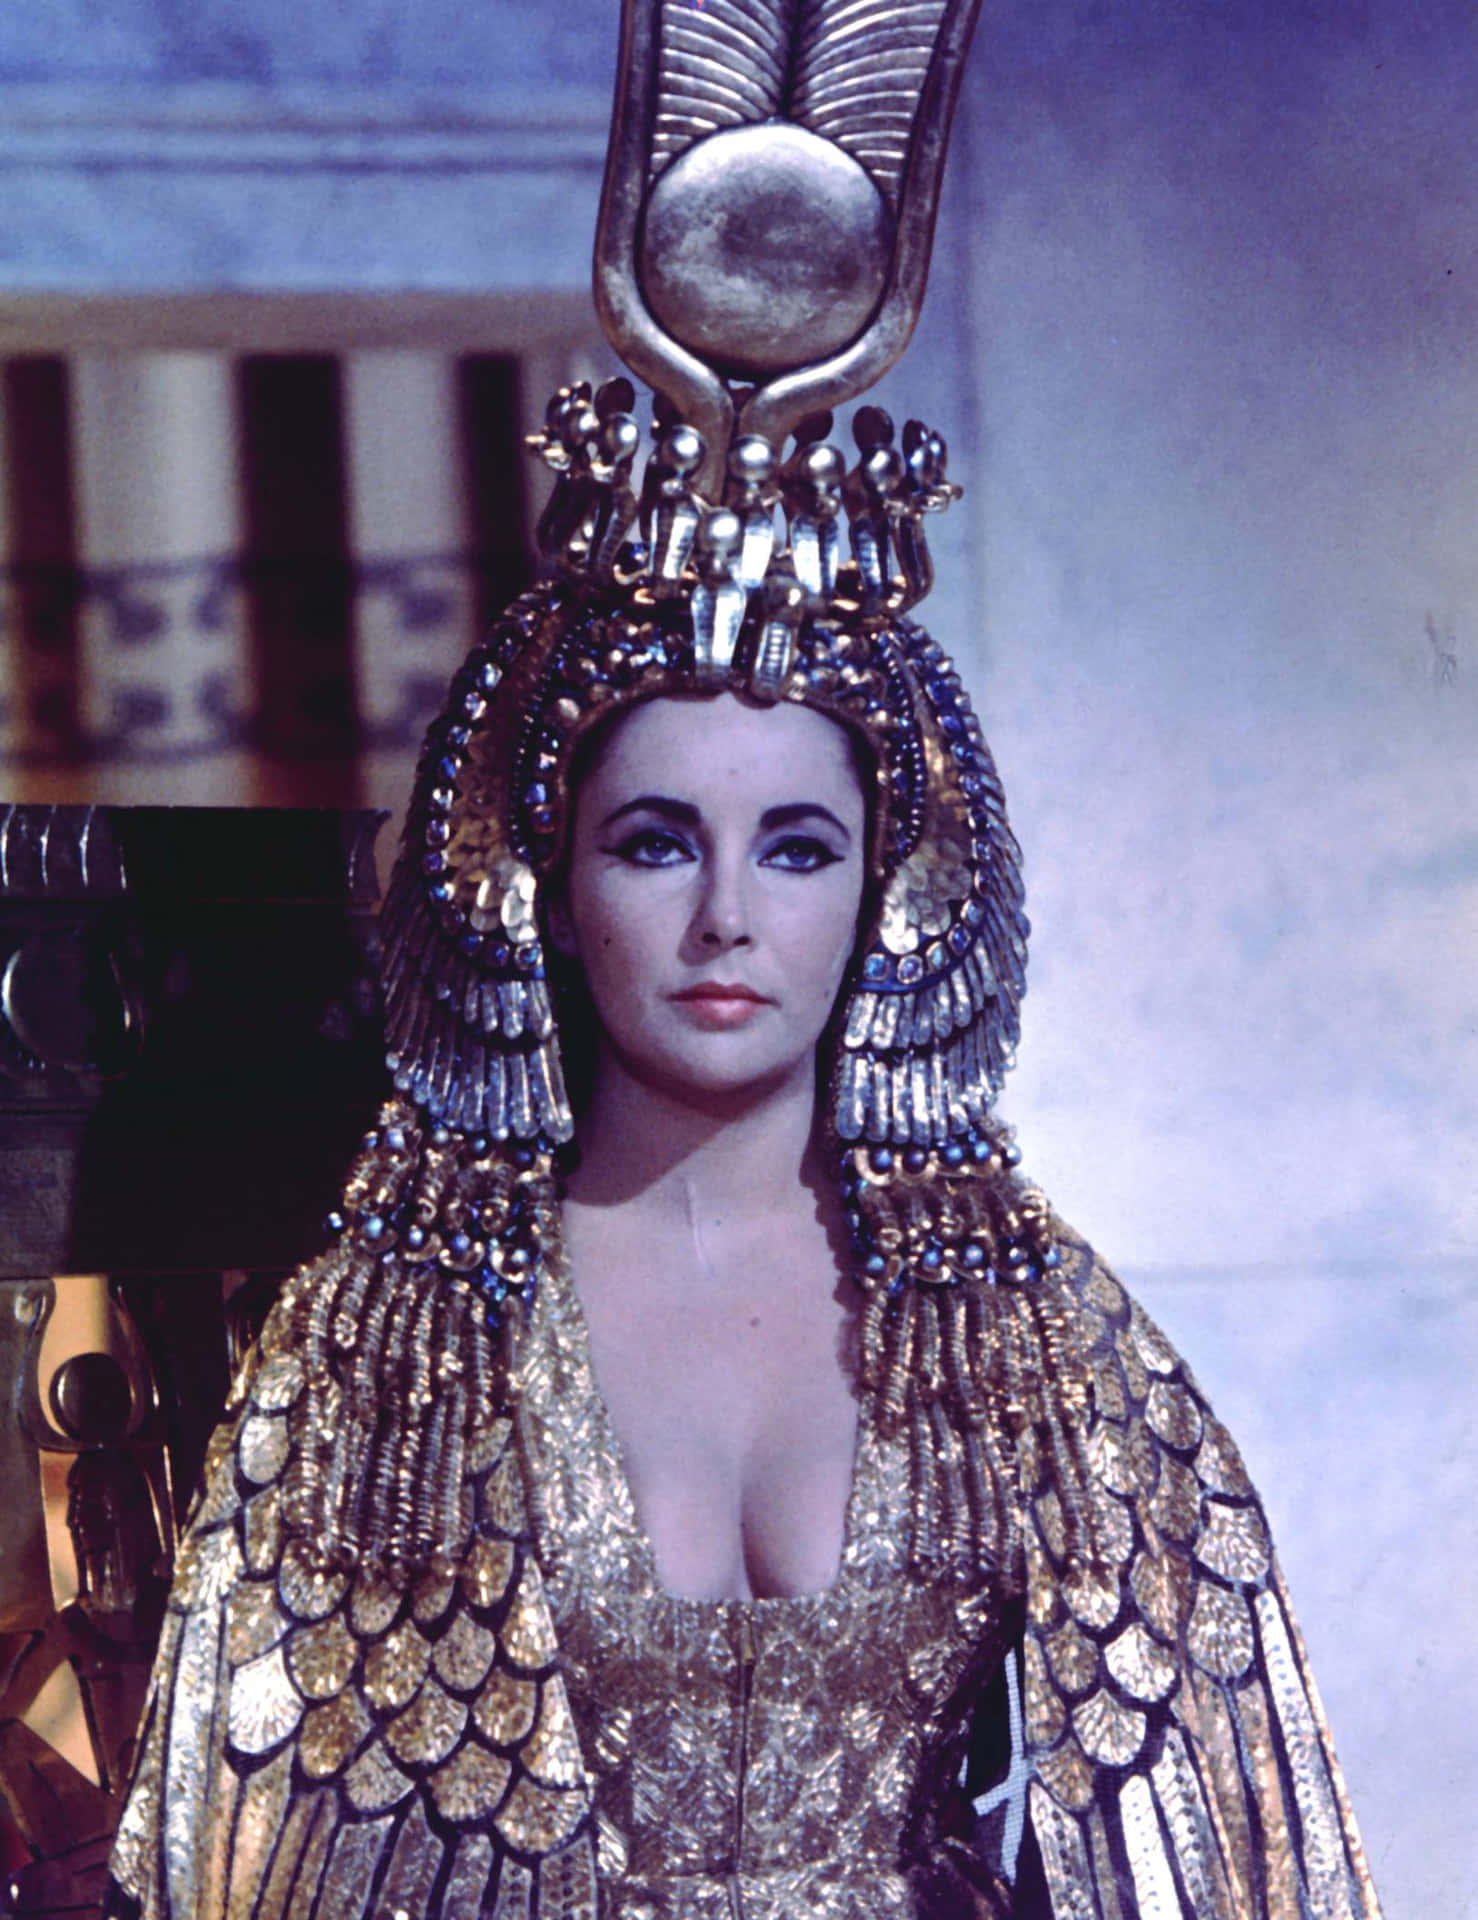 Cleopatra, the Last Pharaoh of Egypt